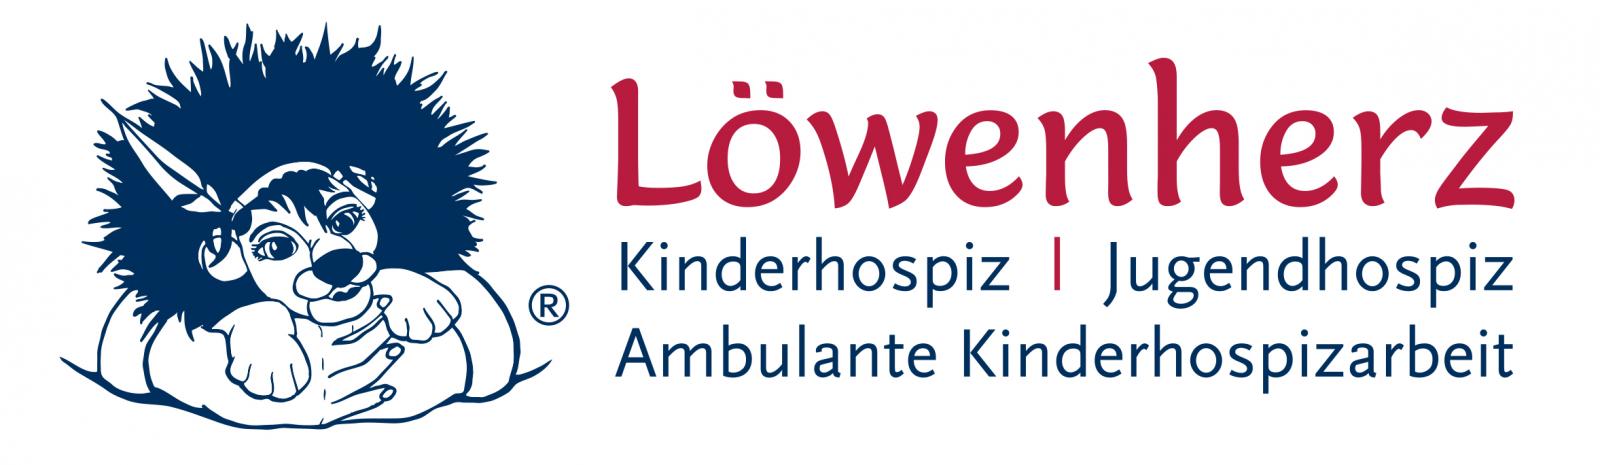 Logo Löwenherz länglich2015